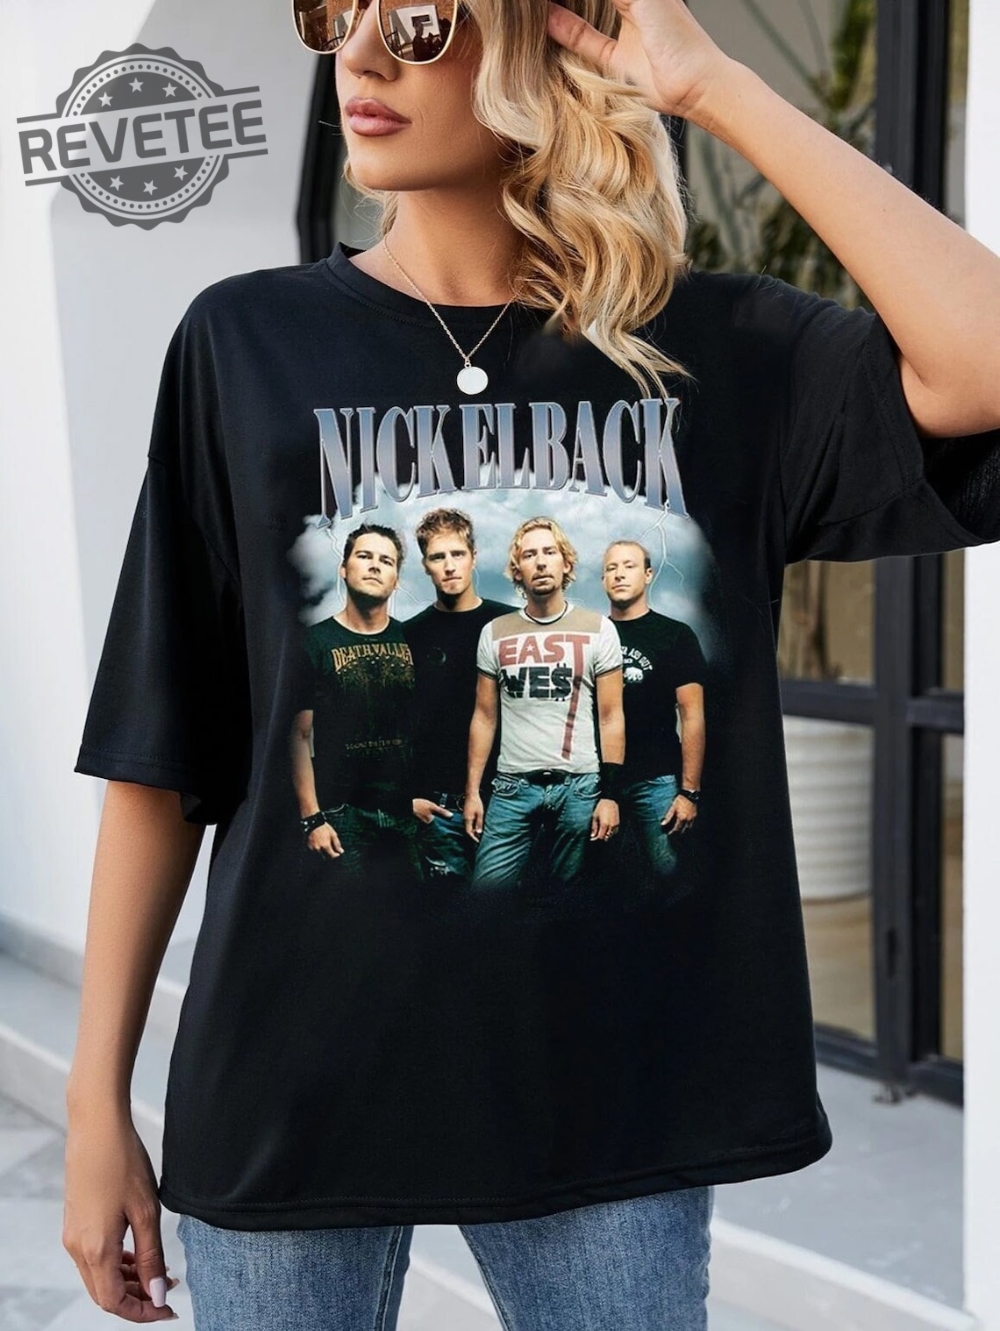 Nickelback Unisex Shirt Funny Nickelback Concert T Shirt Nickelback Concert Nickelback T Shirt Nickelback Photo Unique